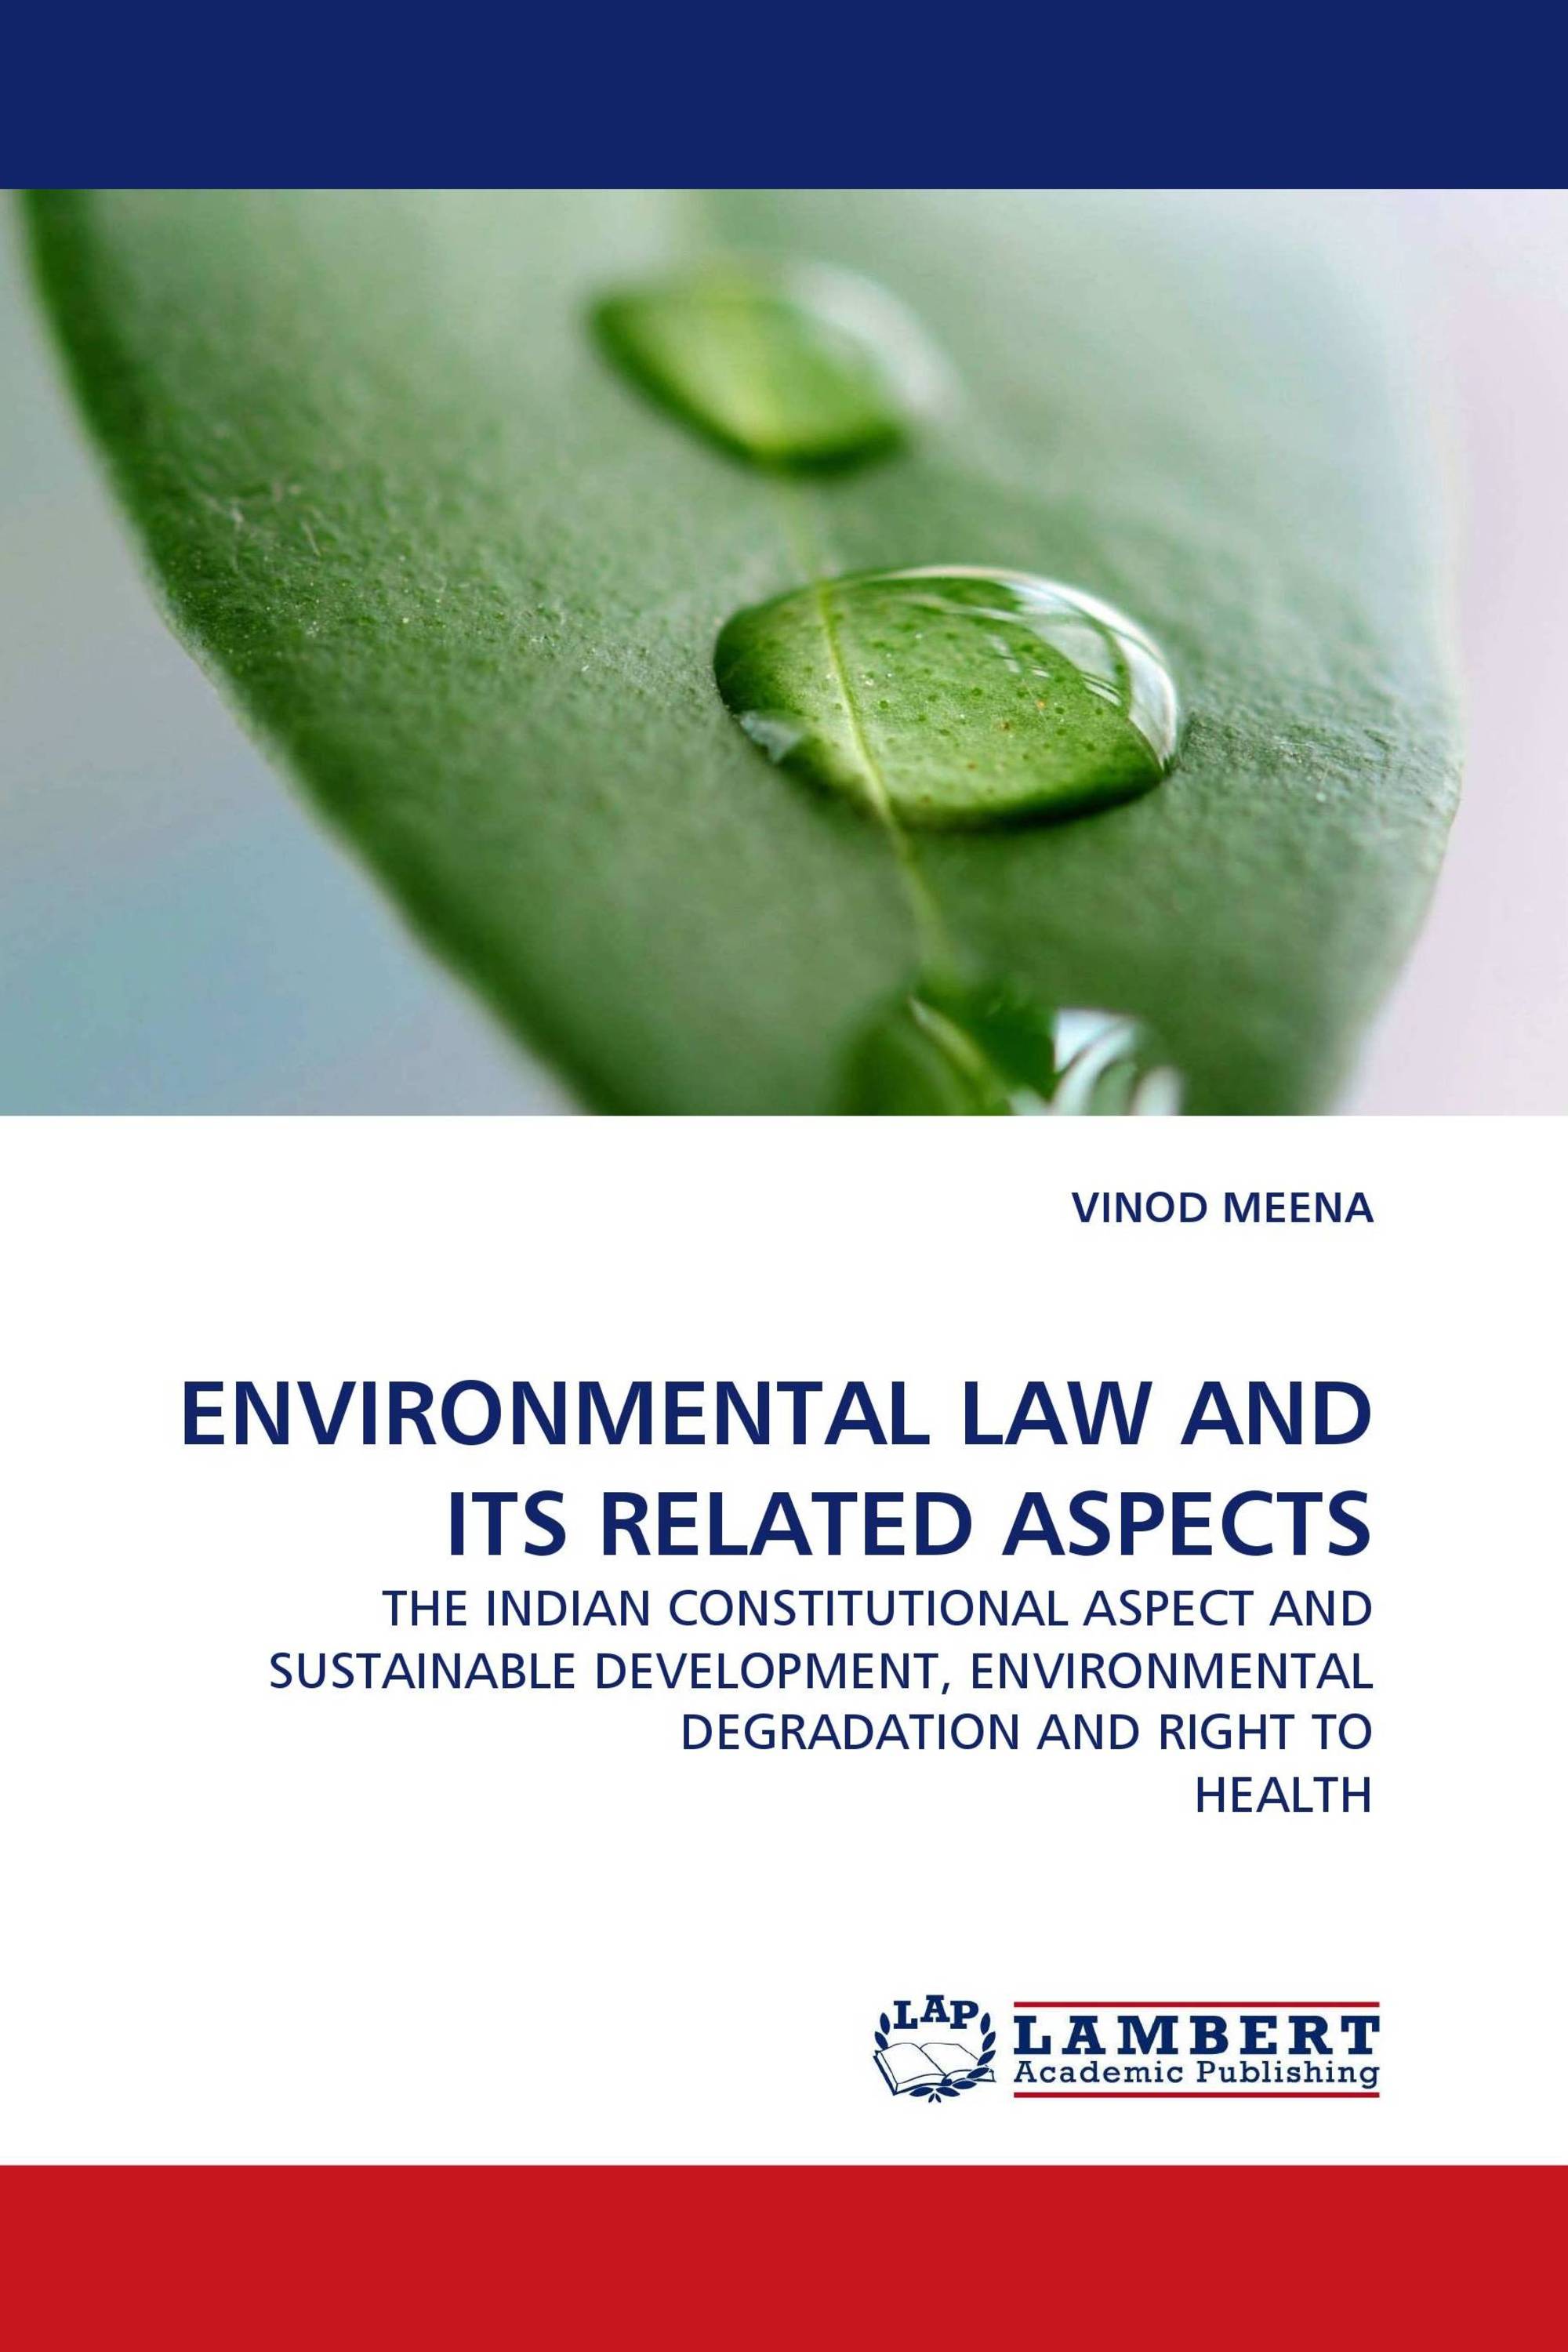 online phd environmental law